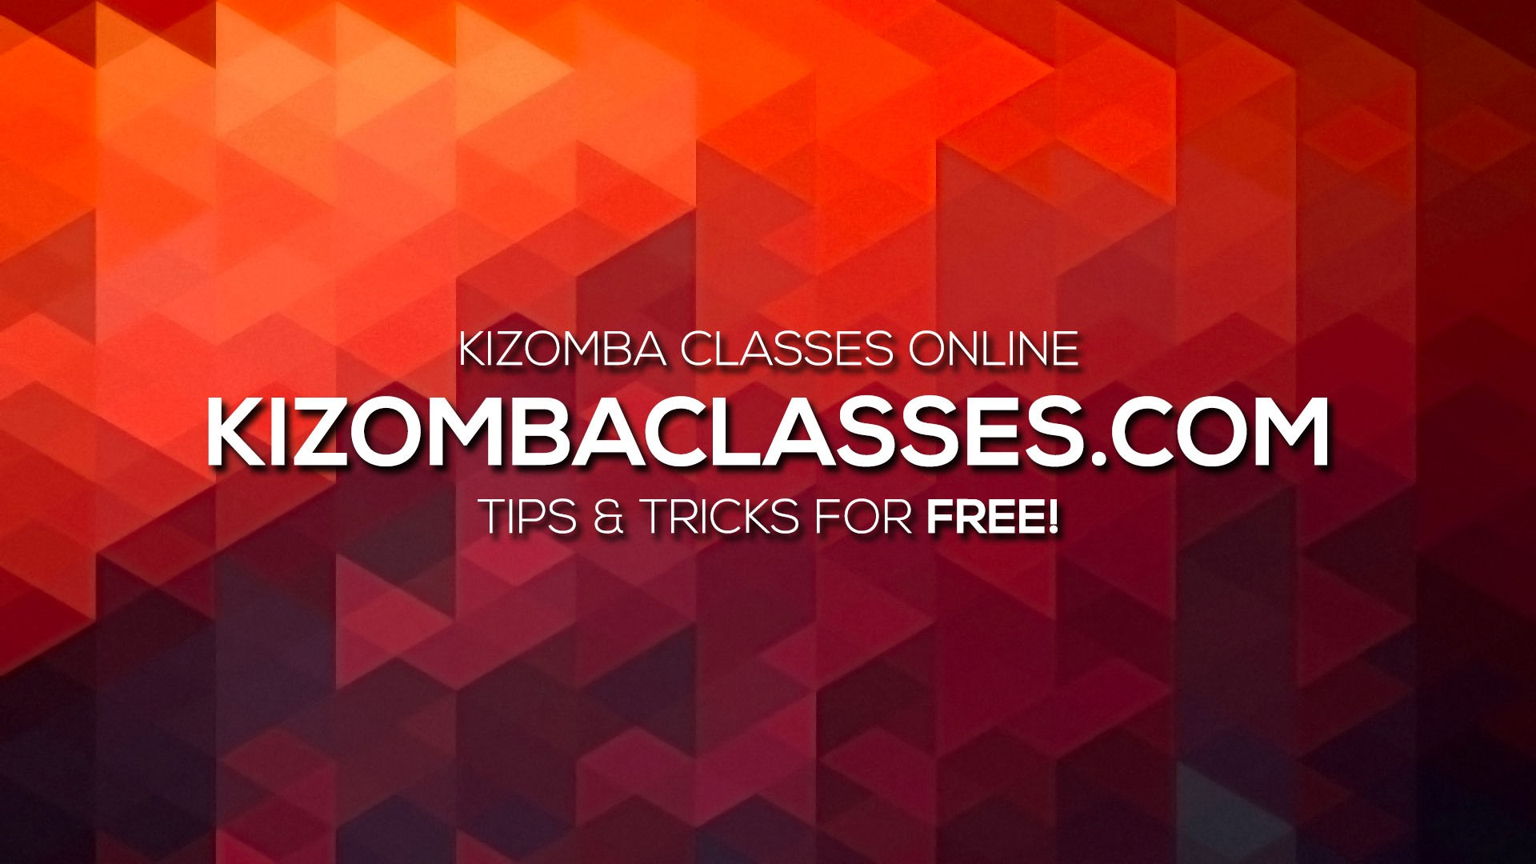 Best Kizomba Classes Online by Kristofer Mencák and Mickaela Jalkteg - Dance With Me India